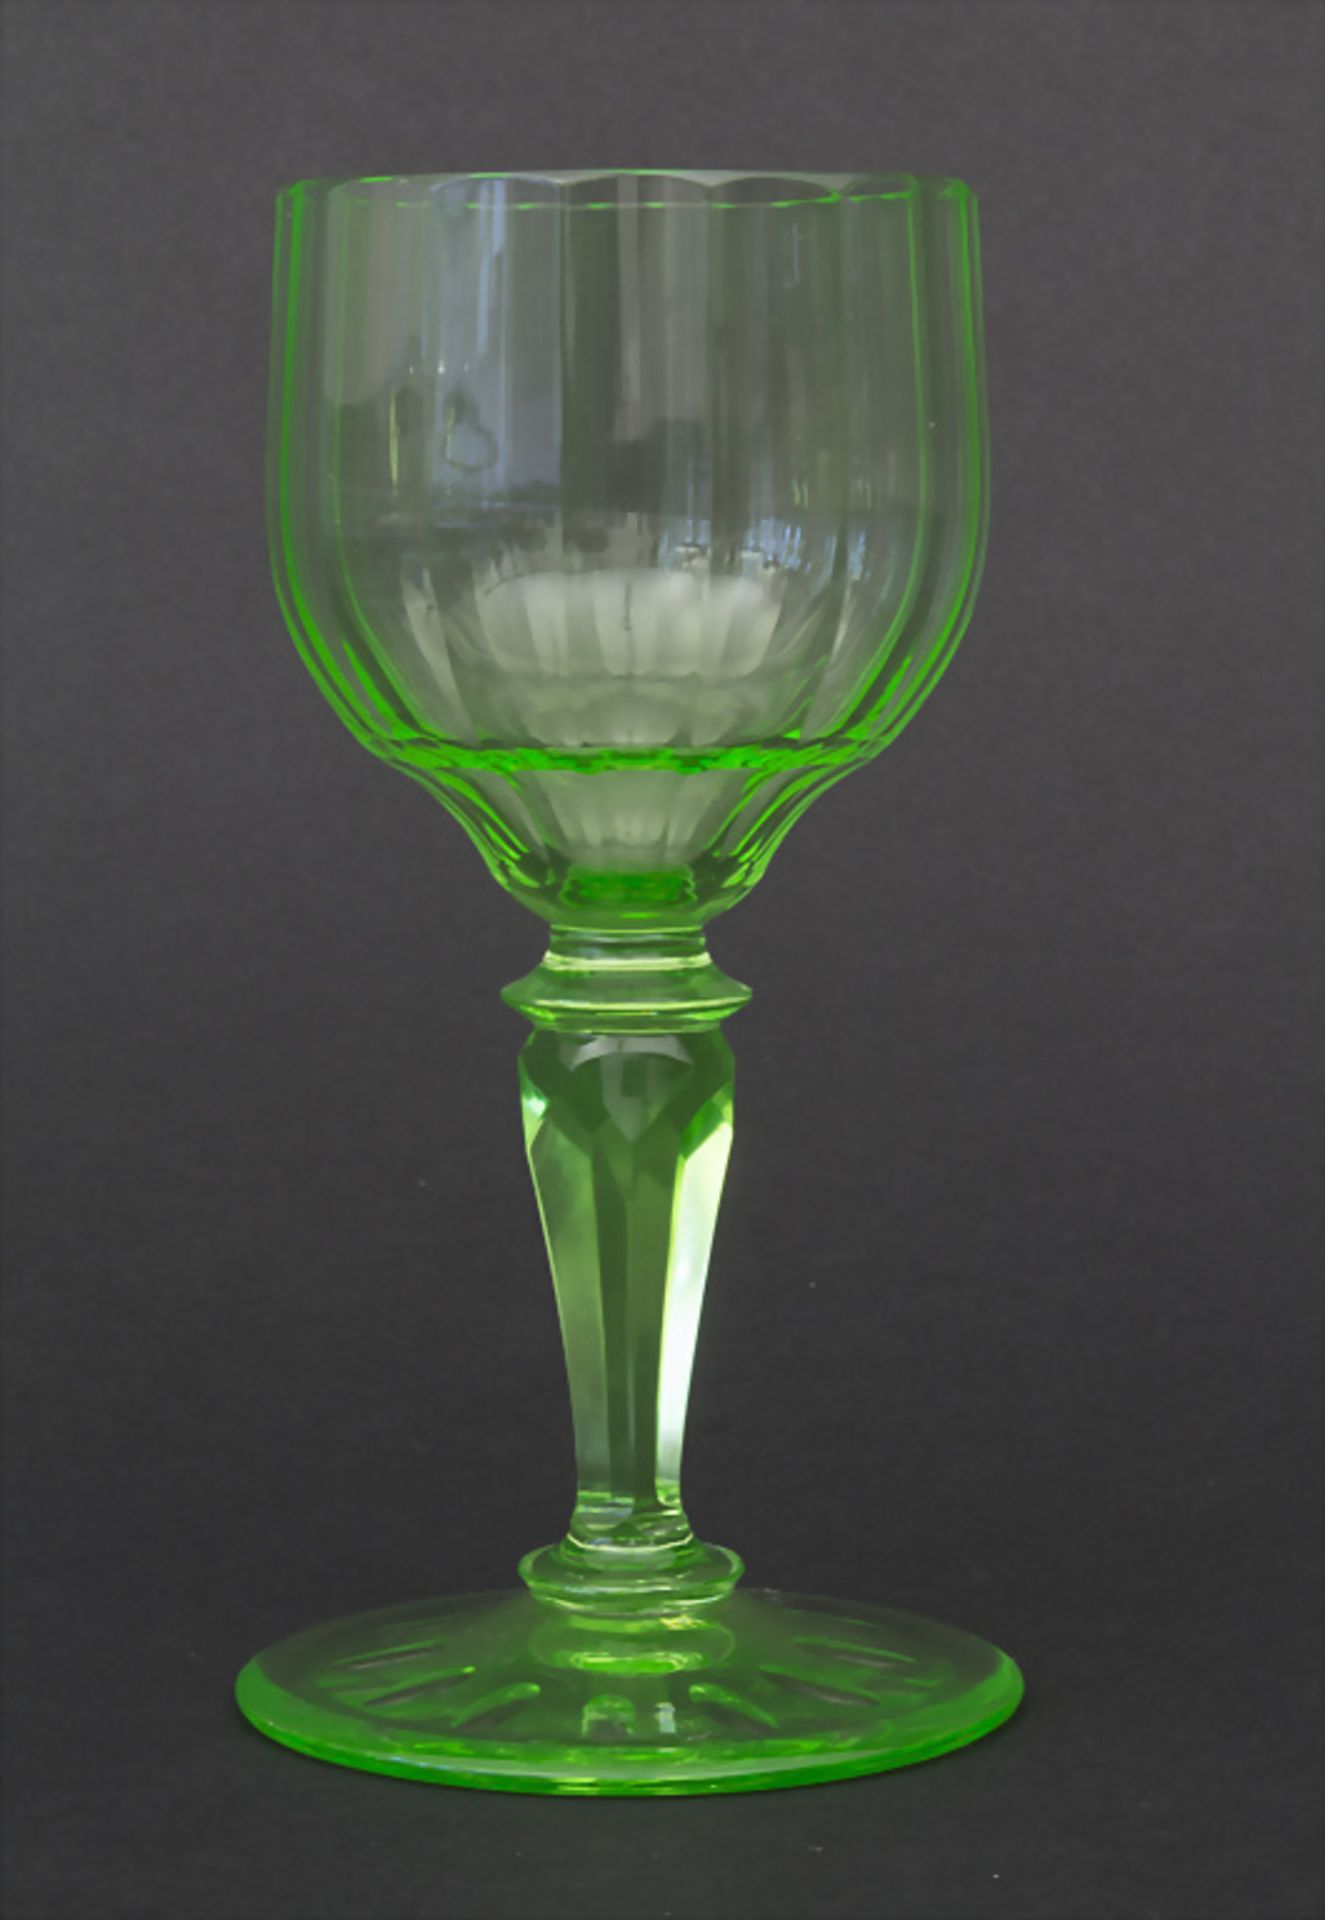 5 Urangläser / 5 uranium glasses, J. & L. Lobmeyr, Wien, um 1900 - Bild 2 aus 4